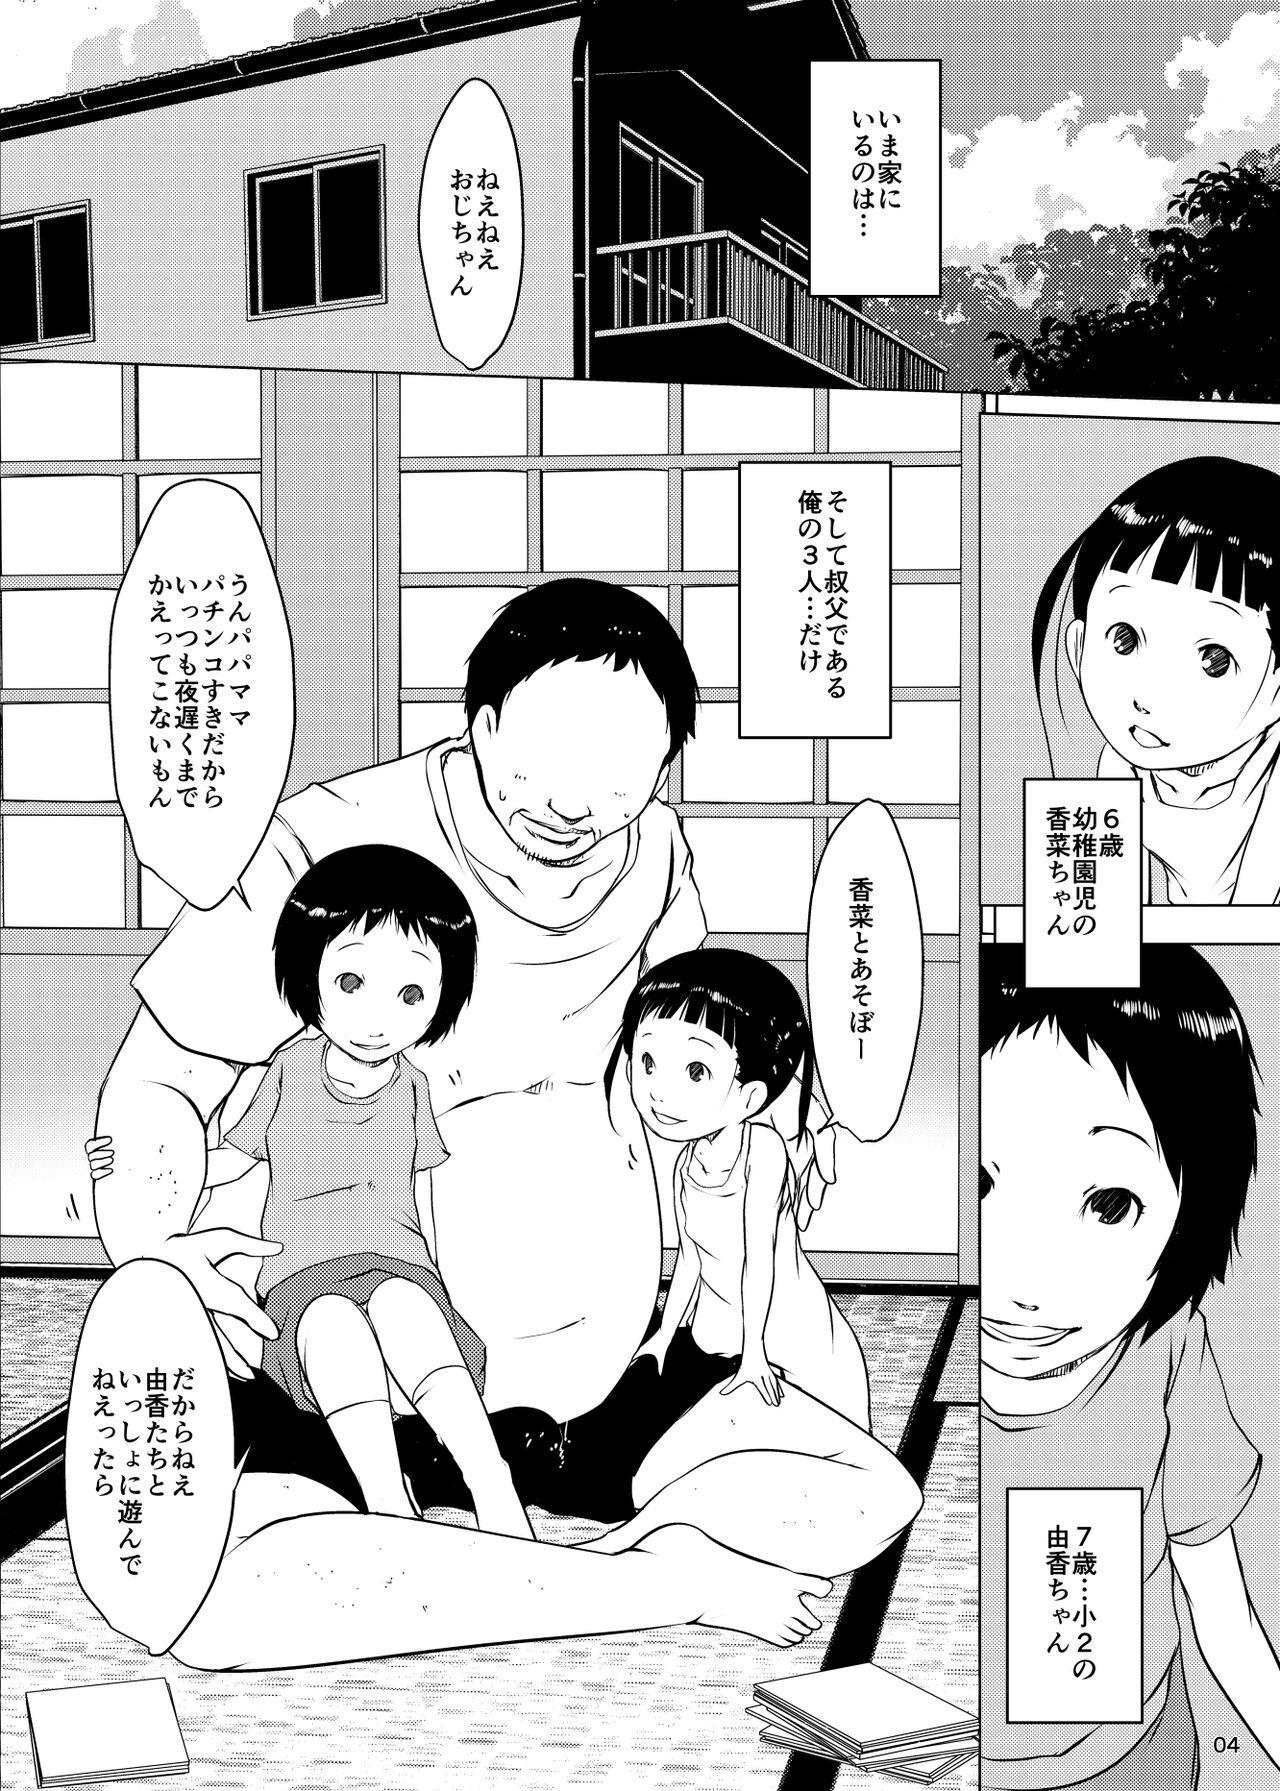 Bald Pussy Jian Hassei Re:05 + Jian Hassei Puni Pedo Kindergarten 2022 Menage - Page 3